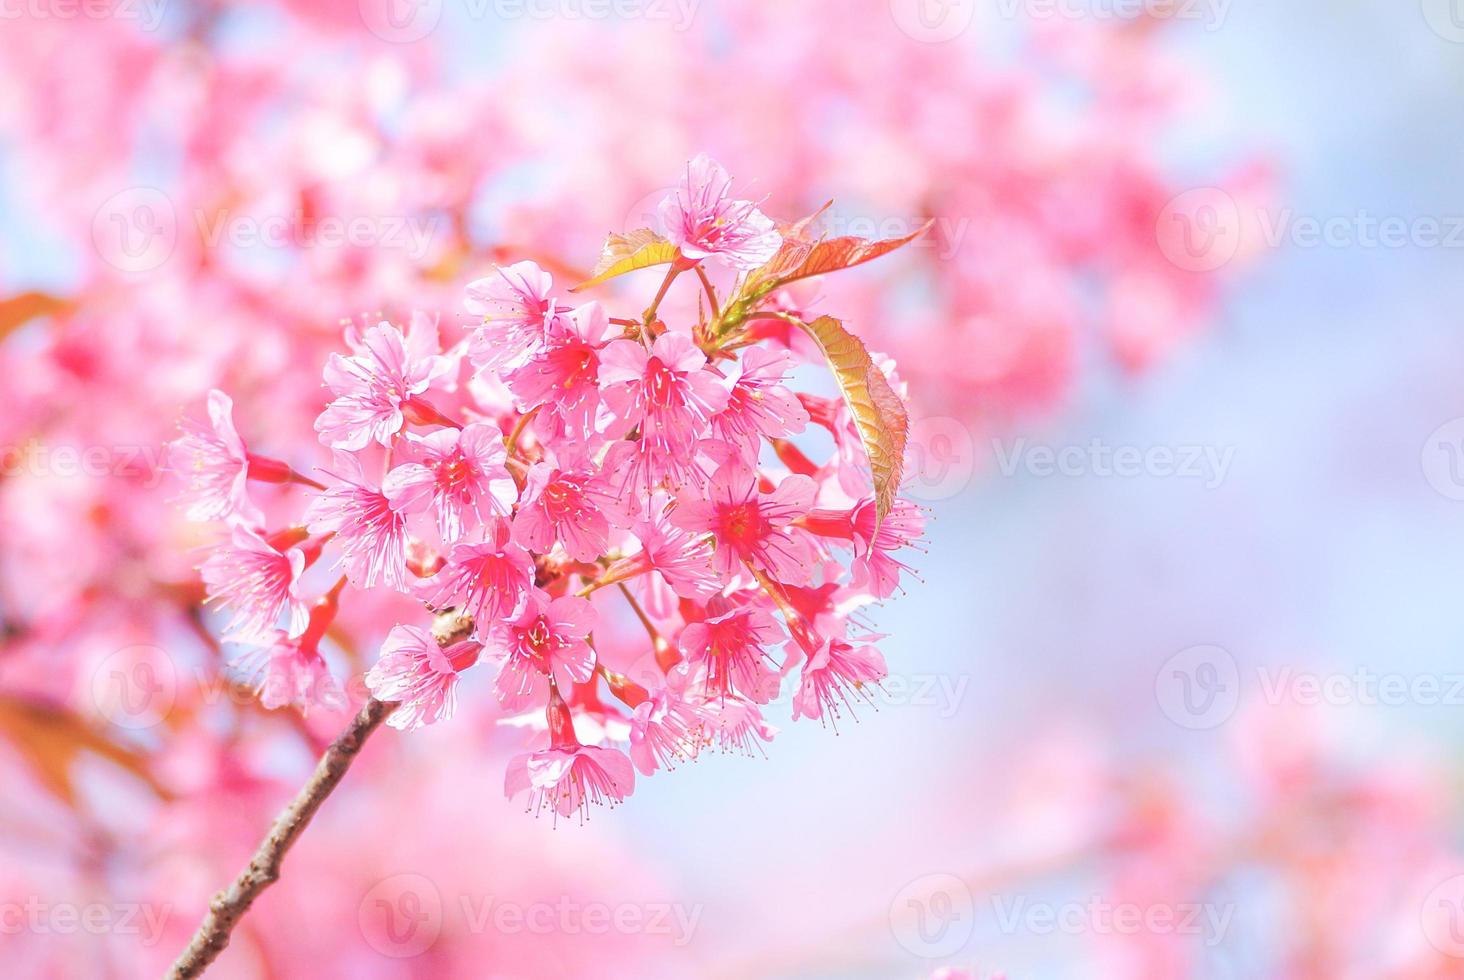 flor de cerezo en primavera con enfoque suave, flor de cerezo de primavera borrosa sin foco, fondo de flor de bokeh, fondo de flor pastel y suave. foto